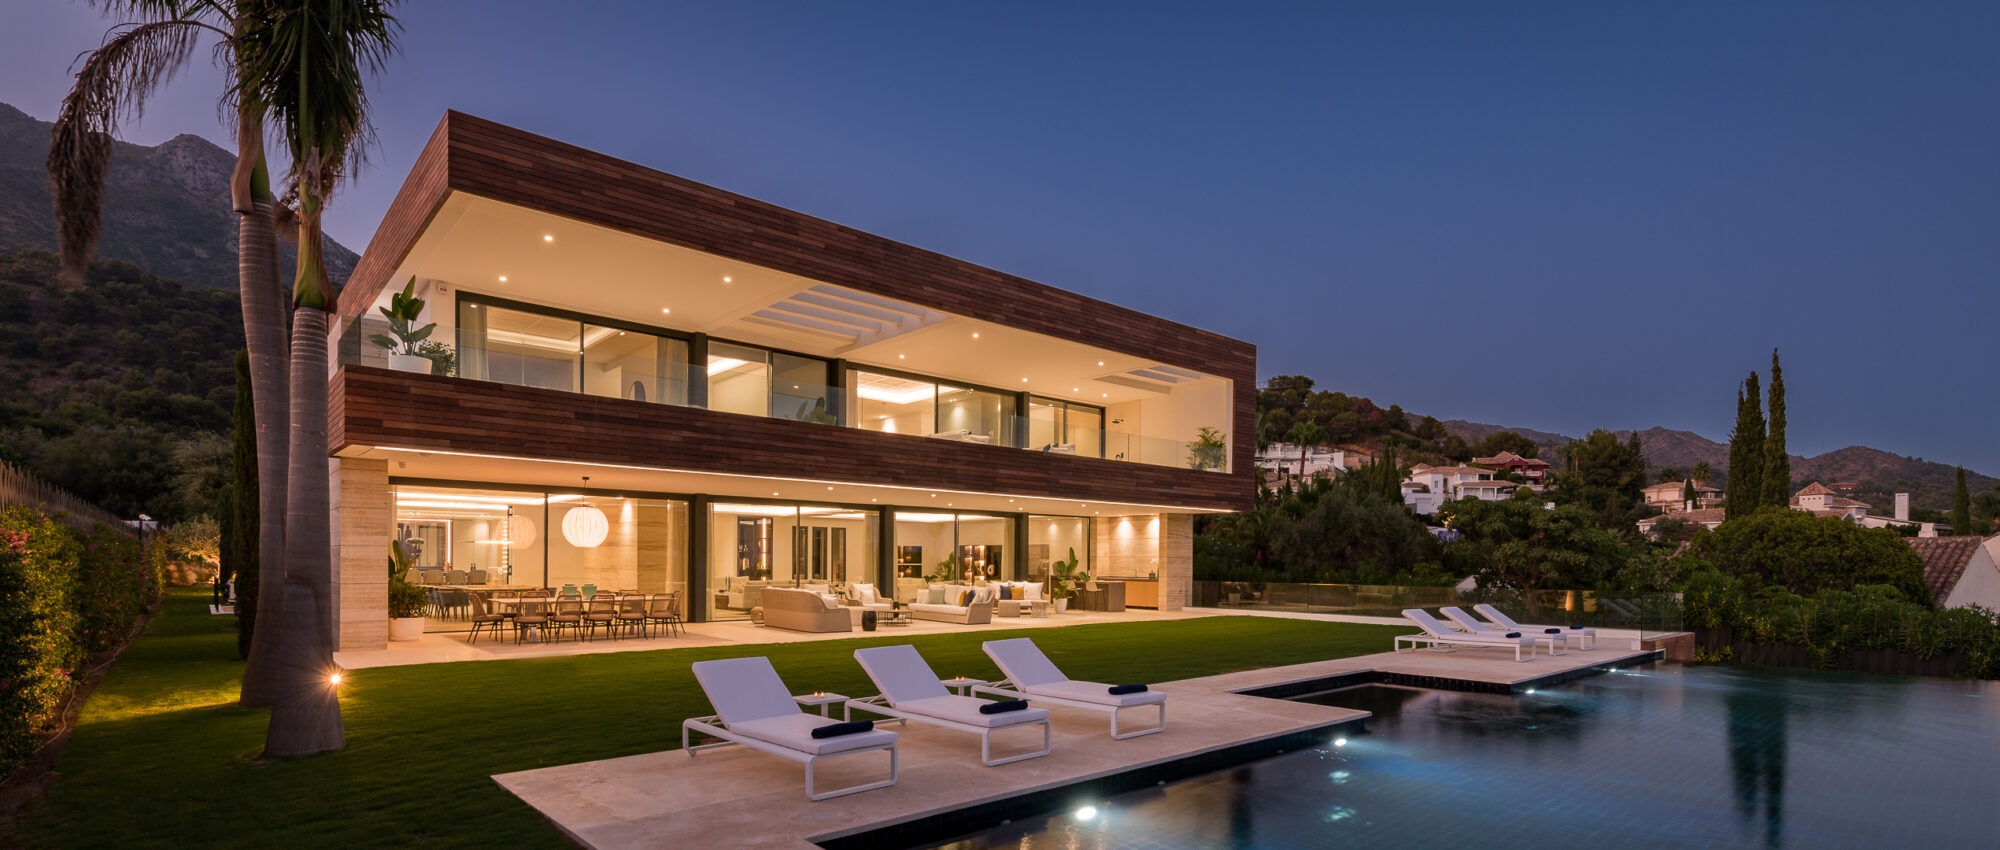 Brandneues Herrenhaus im zeitgenössischen Design mit Meerblick auf der Goldenen Meile, Marbella